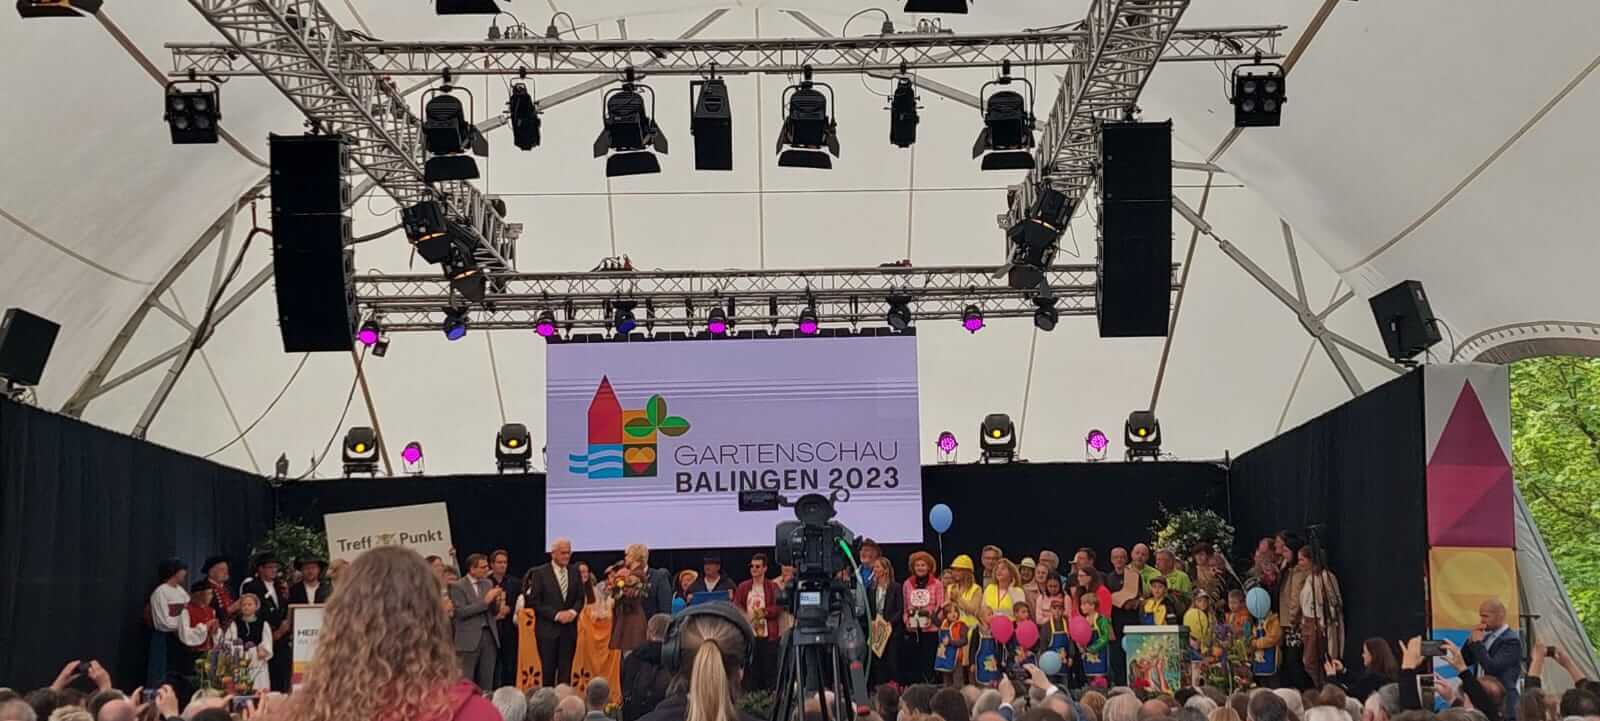 Eröffnungsfeier der Landesgartenschau 2023 in Balingen. Caro Dietz, unsere stellvertretende Vorsitzende, ist für die LandFrauen Zollernalb dabei.